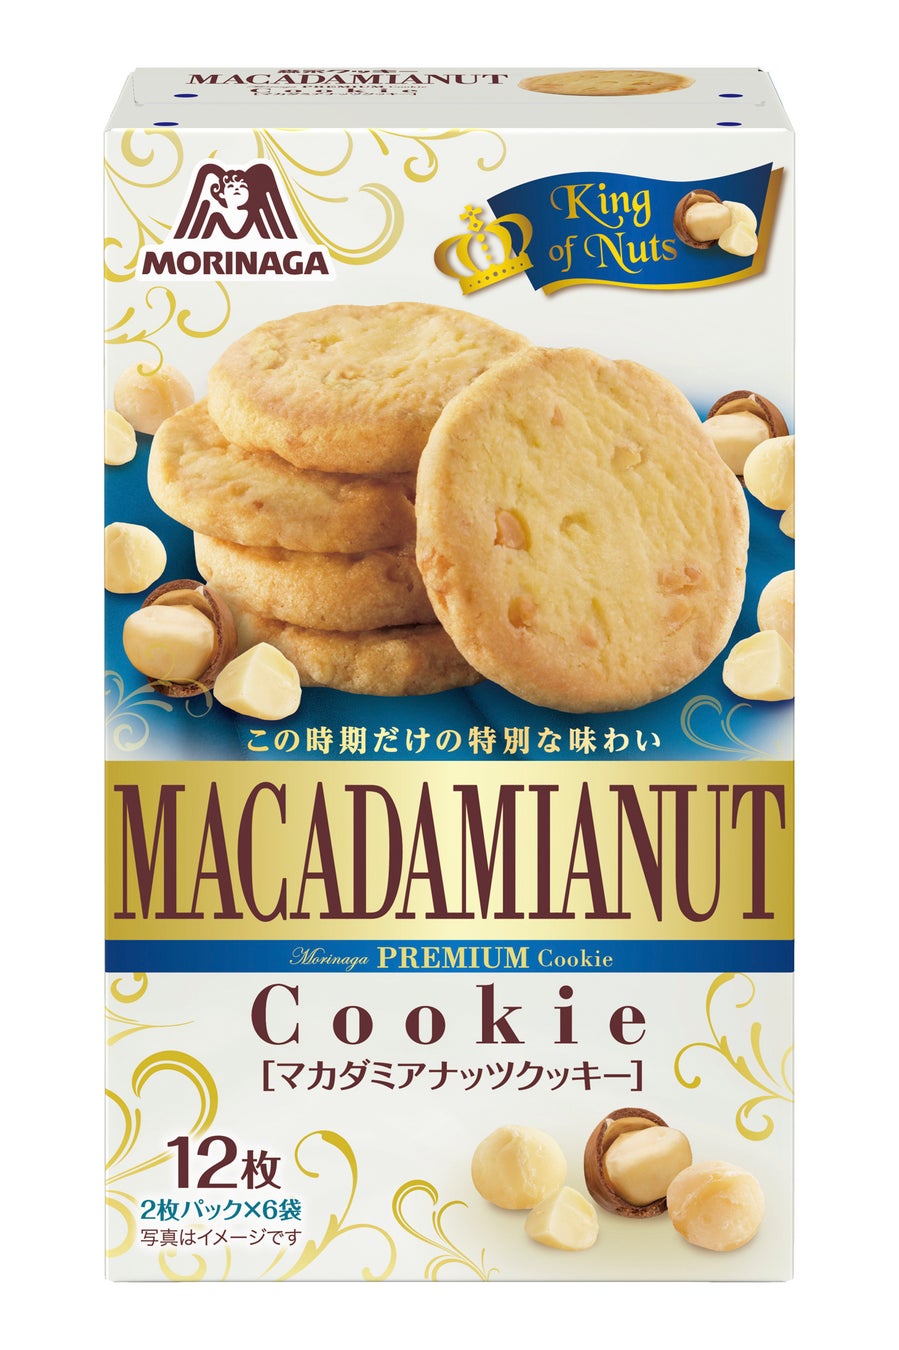 ナッツの王様と呼ばれる「マカダミアナッツ」使用　まろやかな甘さと芳醇な香りで贅沢なティータイム「マカダミアナッツクッキー」7月25日（火）より新発売！